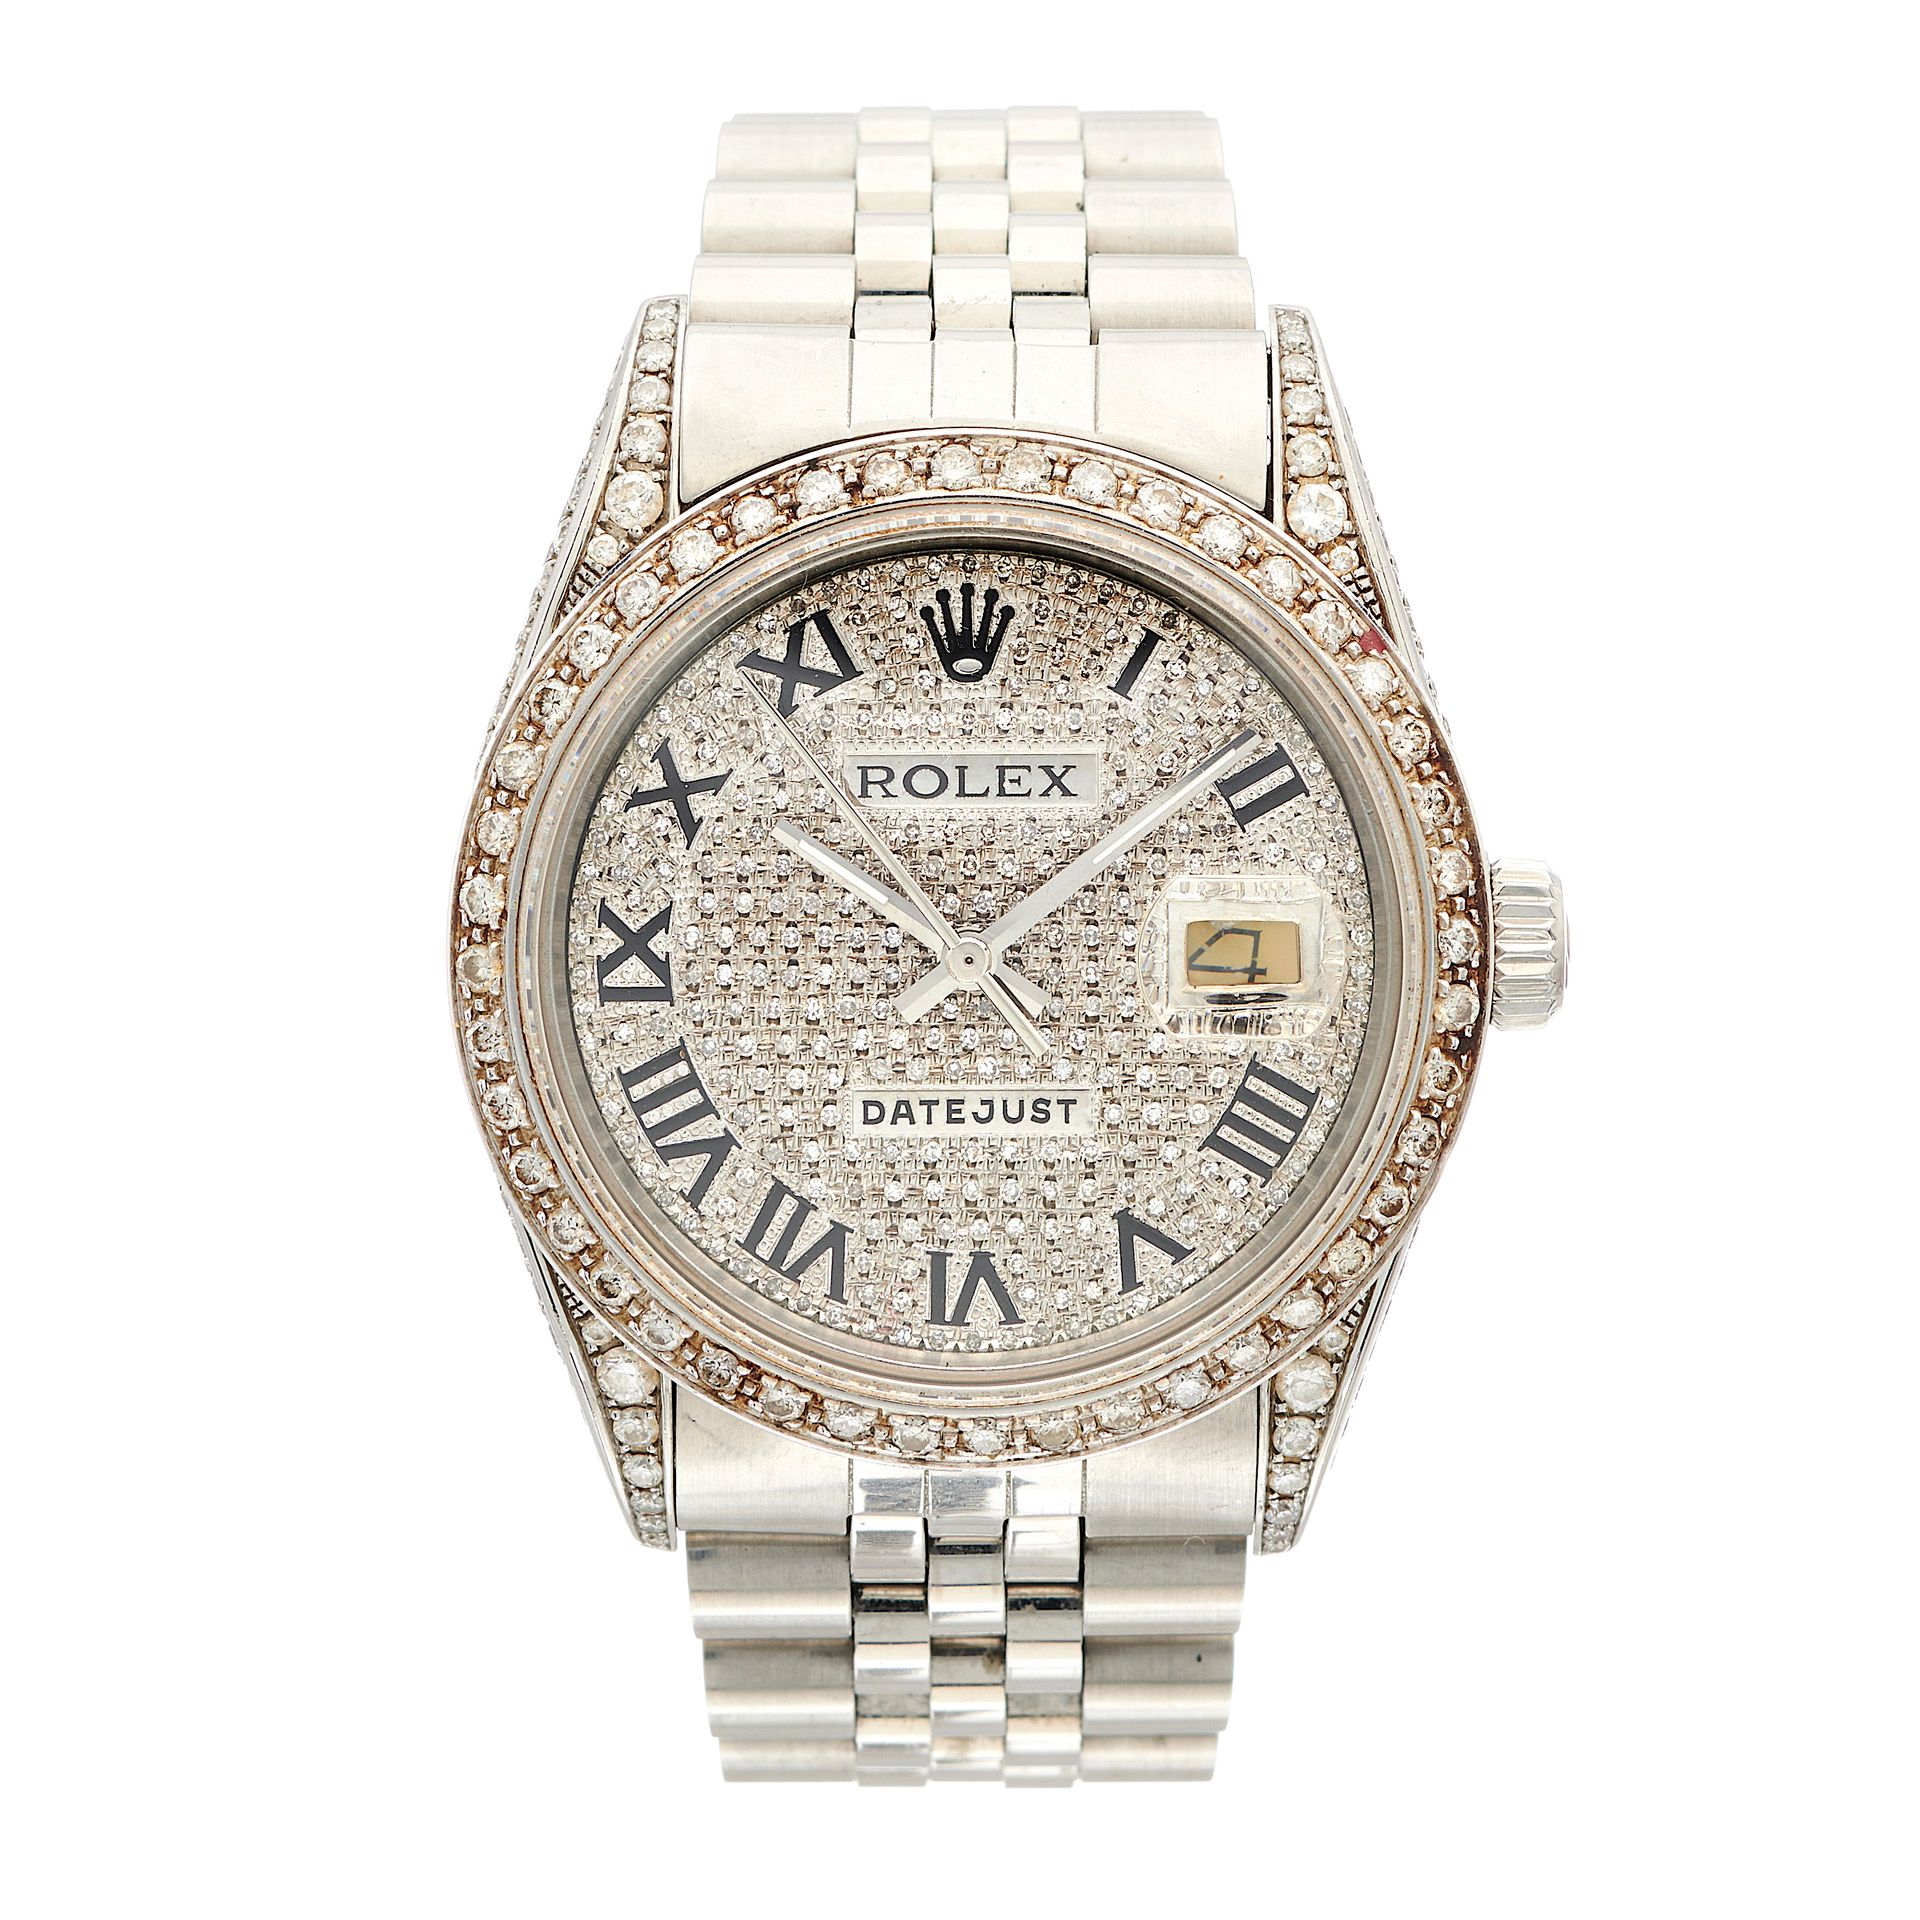 Null Rolex, reloj de acero inoxidable Oyster Perpetual Datejust con brazalete, c&hellip;